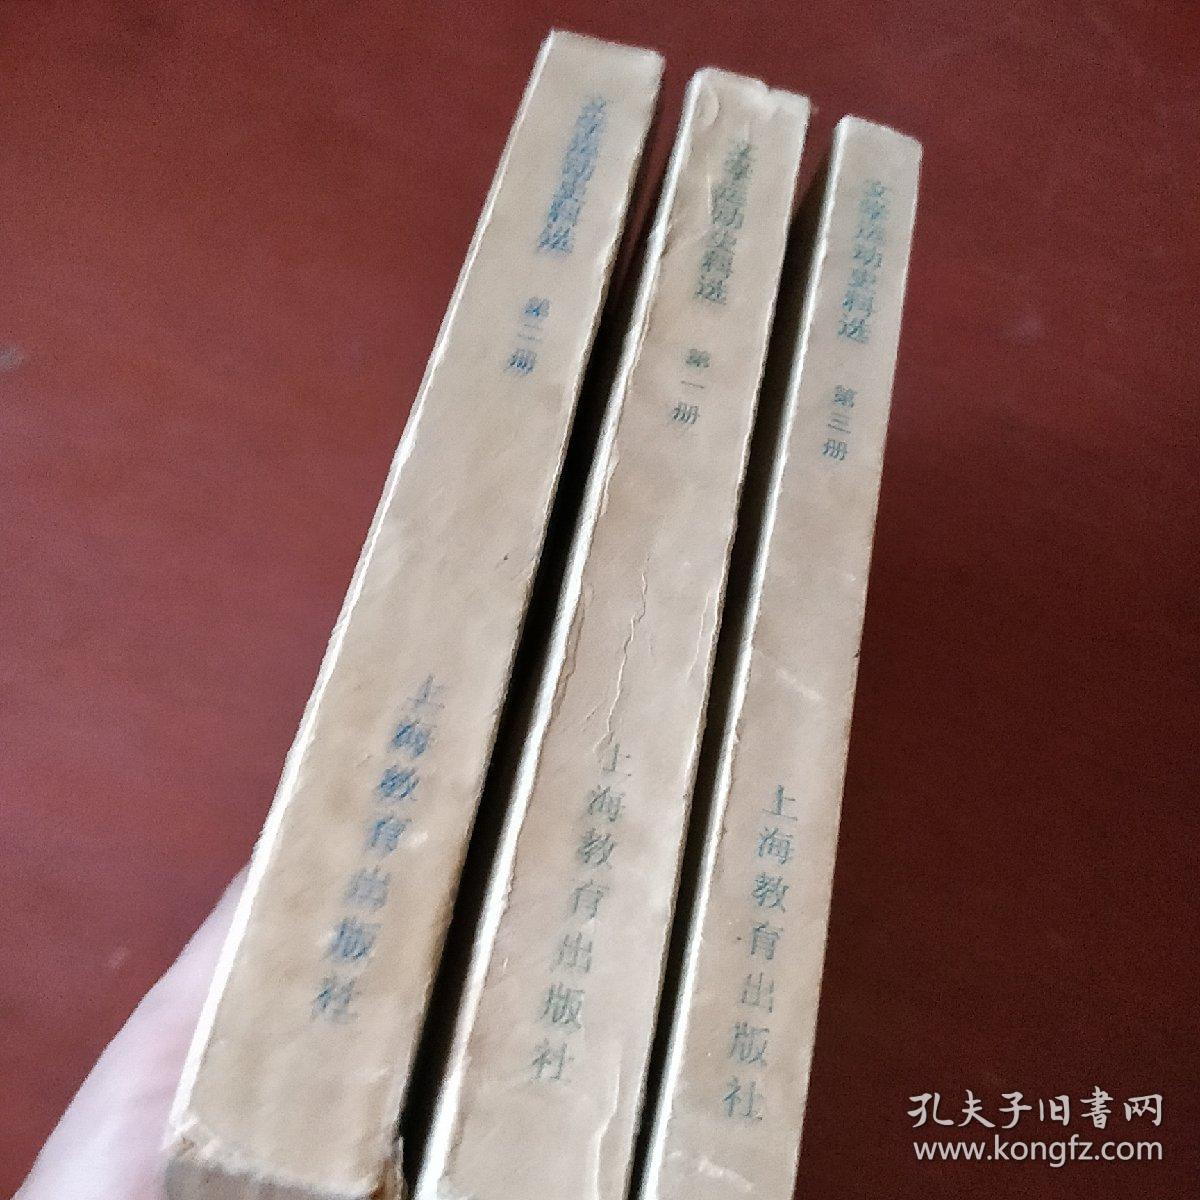 《文学运动史料选》第1册 2册 3册 上海教育出版社 私藏 书品如图